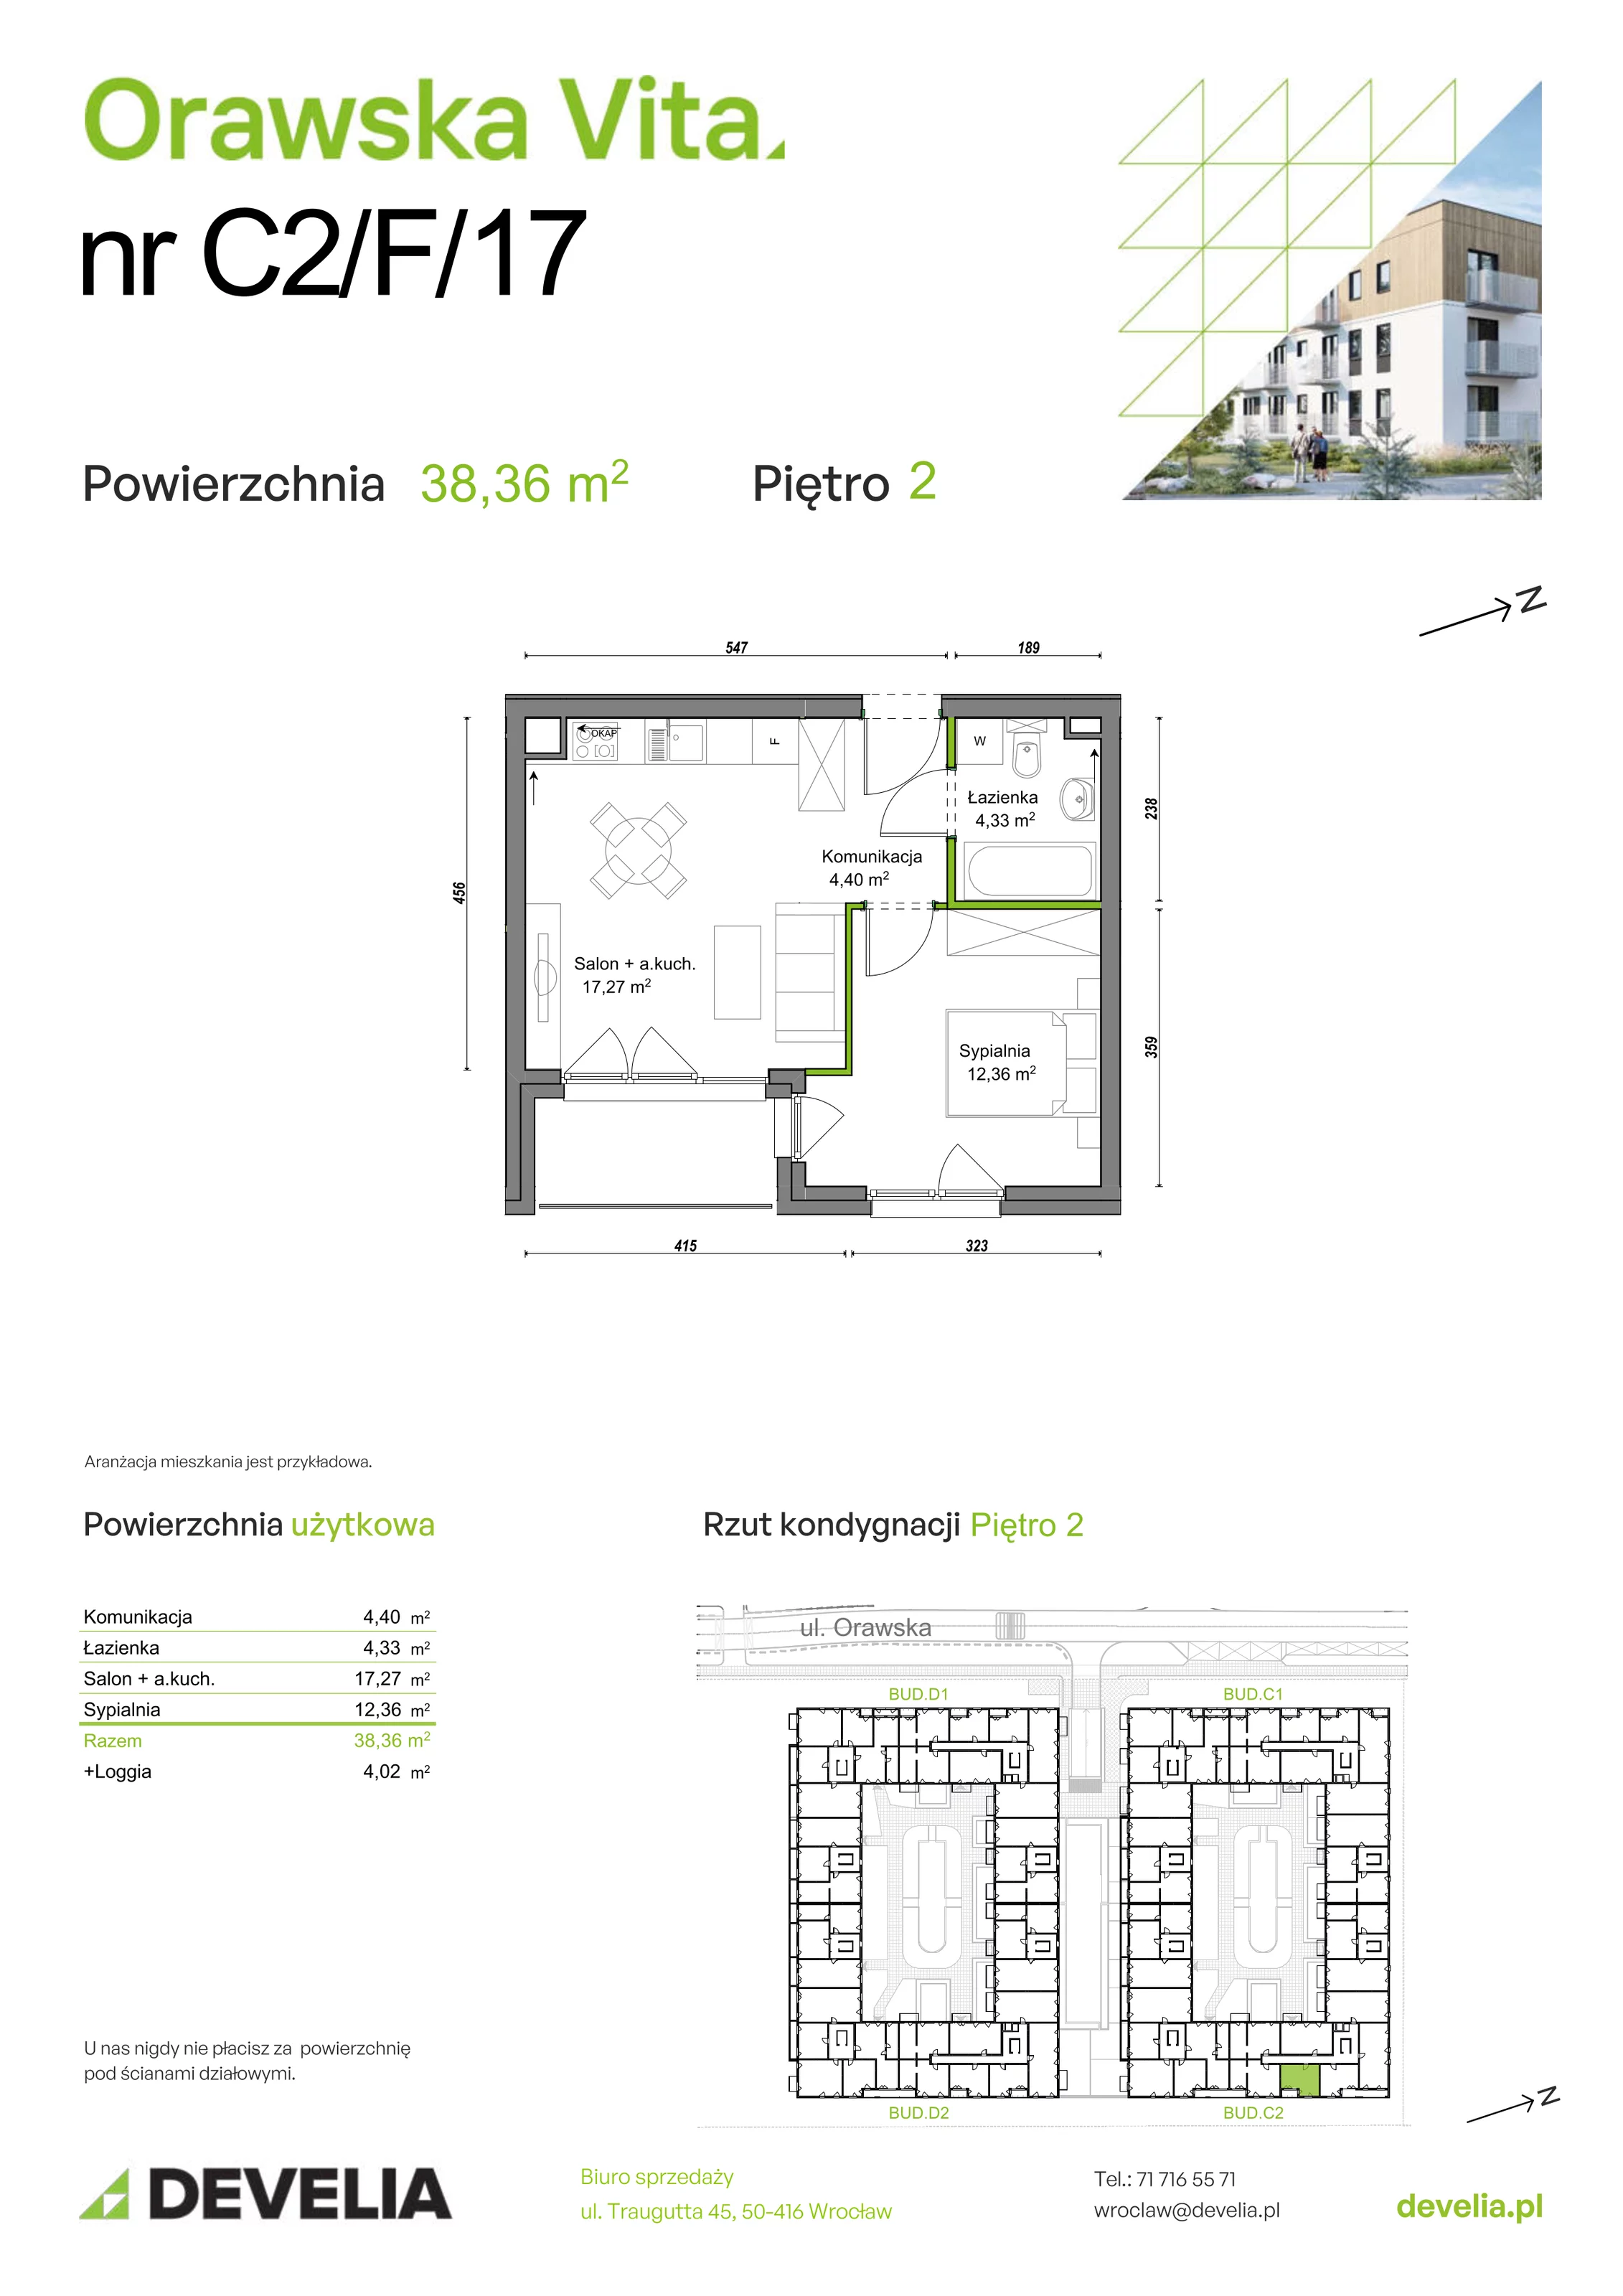 Mieszkanie 38,36 m², piętro 2, oferta nr C2/F/17, Orawska Vita, Wrocław, Ołtaszyn, Krzyki, ul. Orawska 73